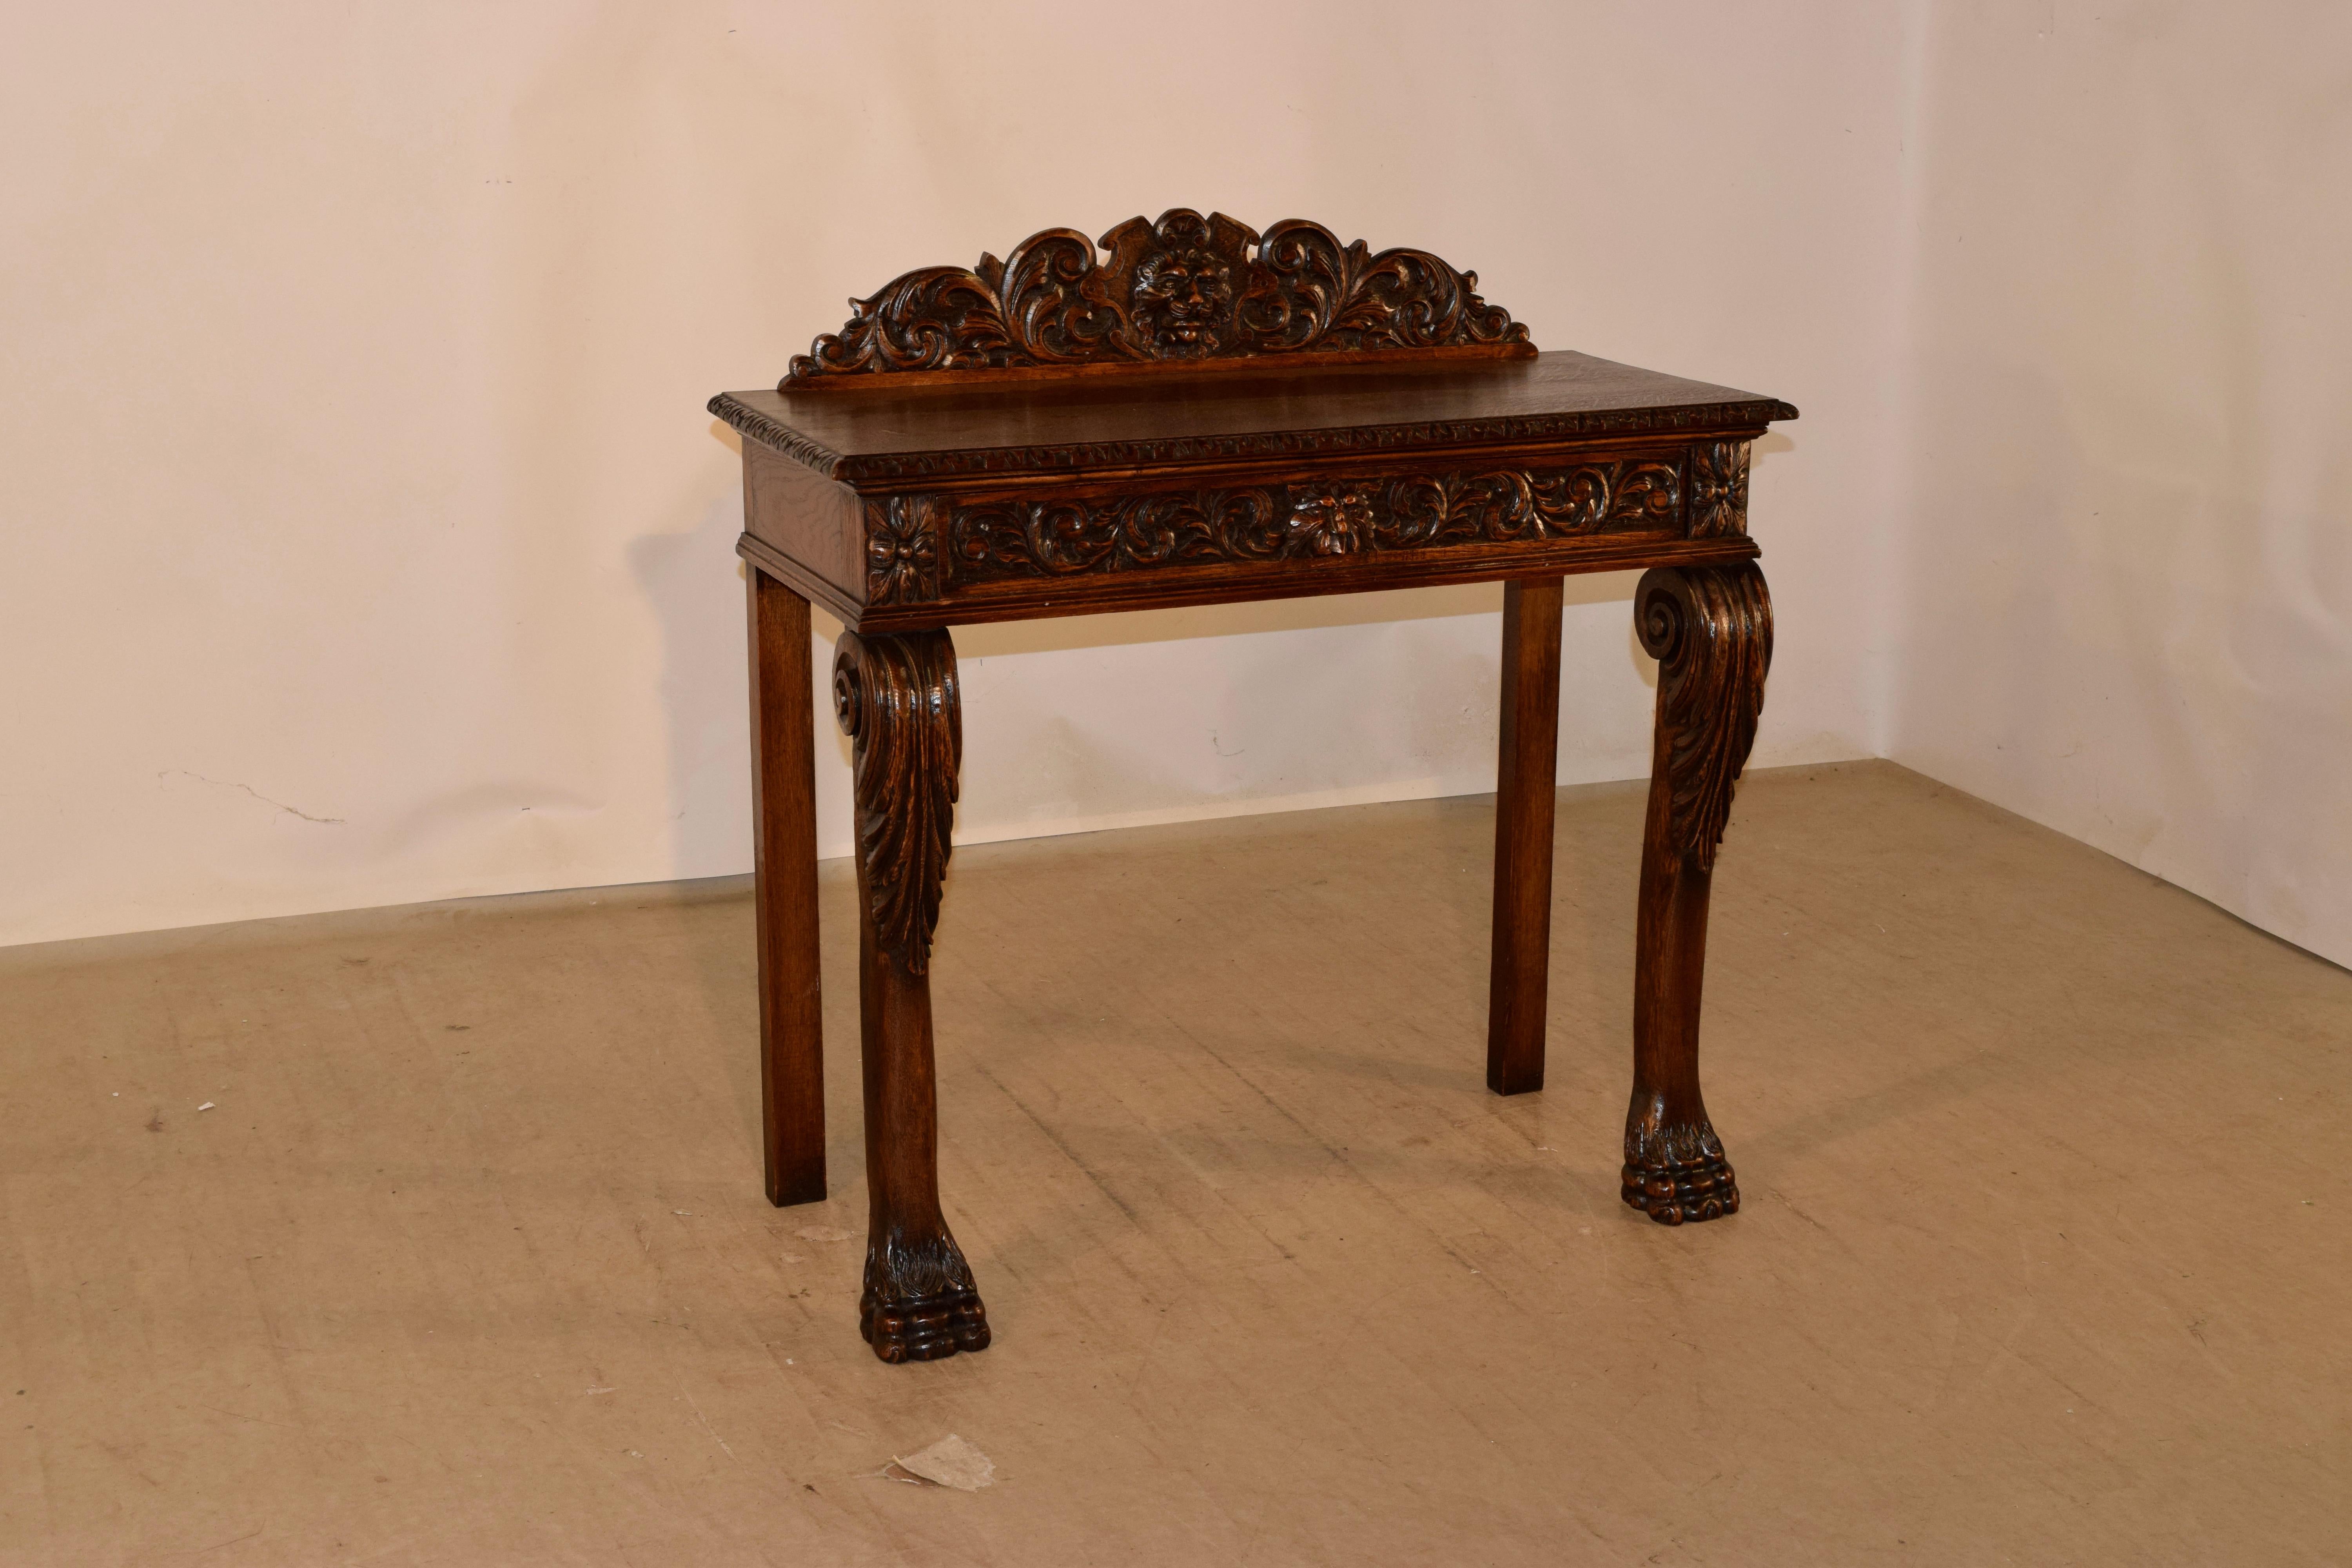 table console en chêne du 19e siècle, originaire d'Angleterre, avec un imposant dosseret décoré à la main d'un bouclier central avec une tête de lion entourée de feuilles d'acanthe, au-dessus d'un plateau à bord biseauté et sculpté. Il s'ensuit des